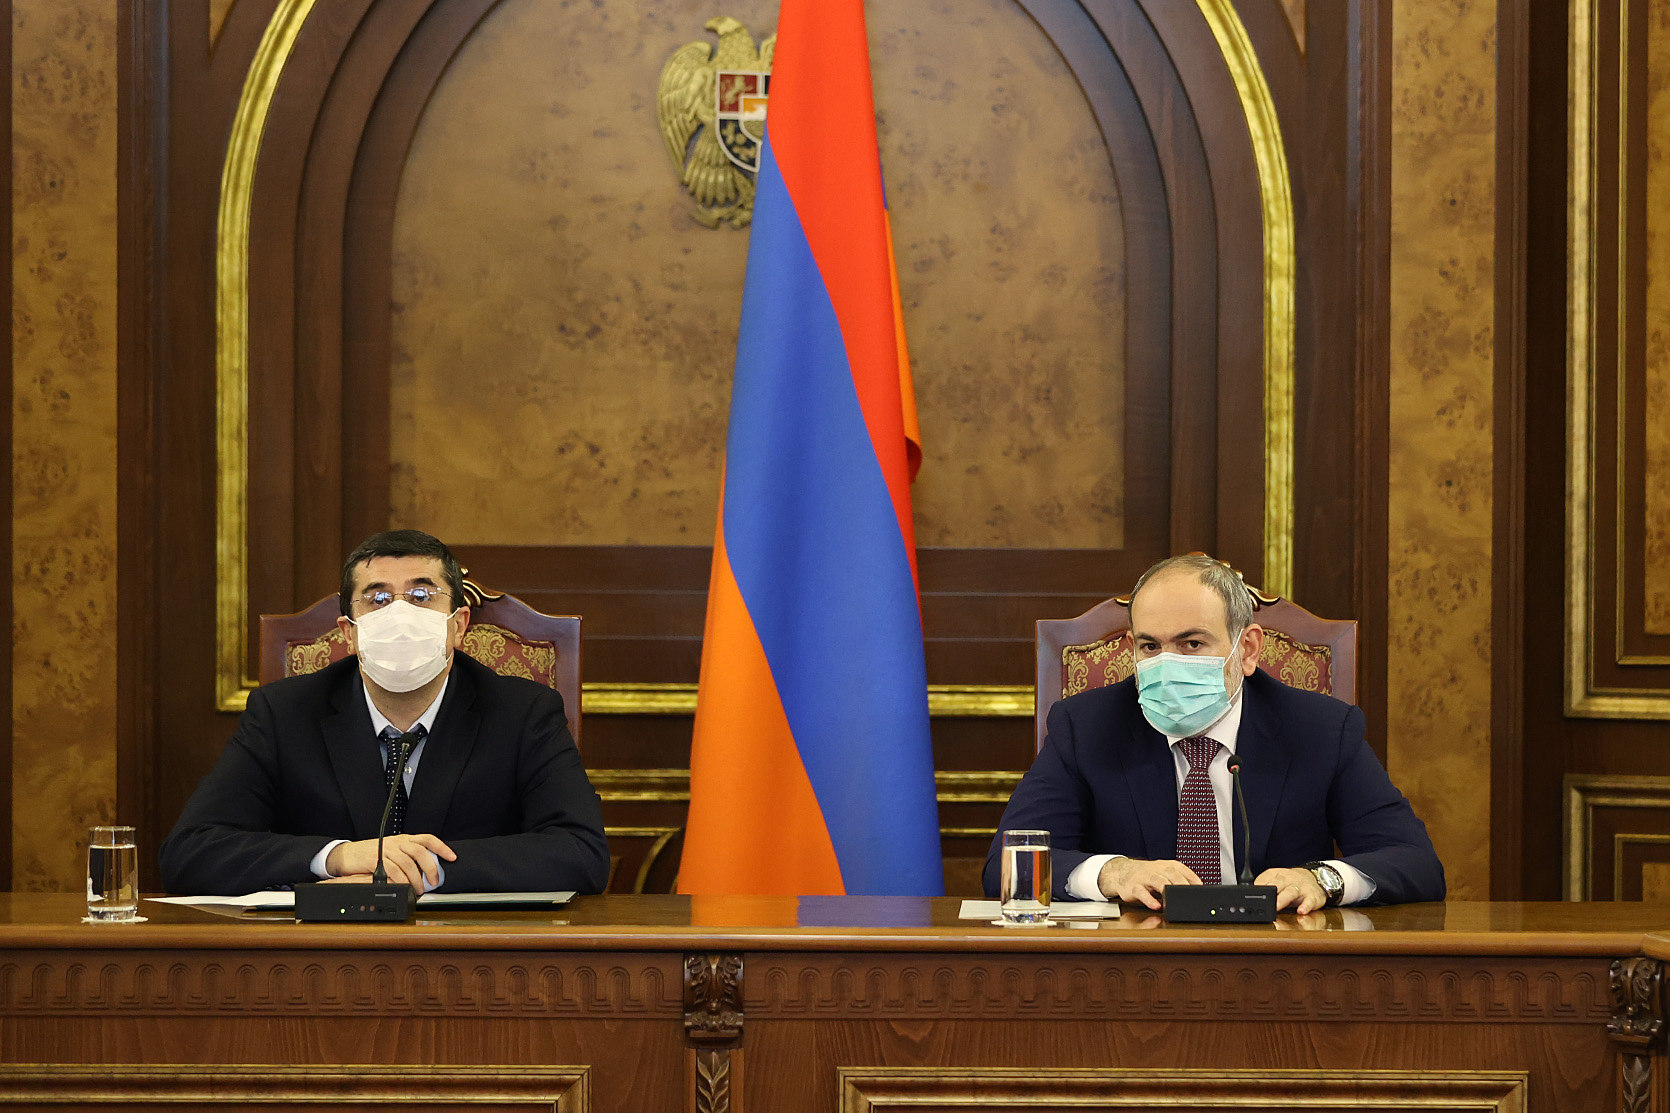 Երևանում տեղի է ունեցել ՀՀ և Արցախի Անվտանգության խորհուրդների համատեղ նիստ